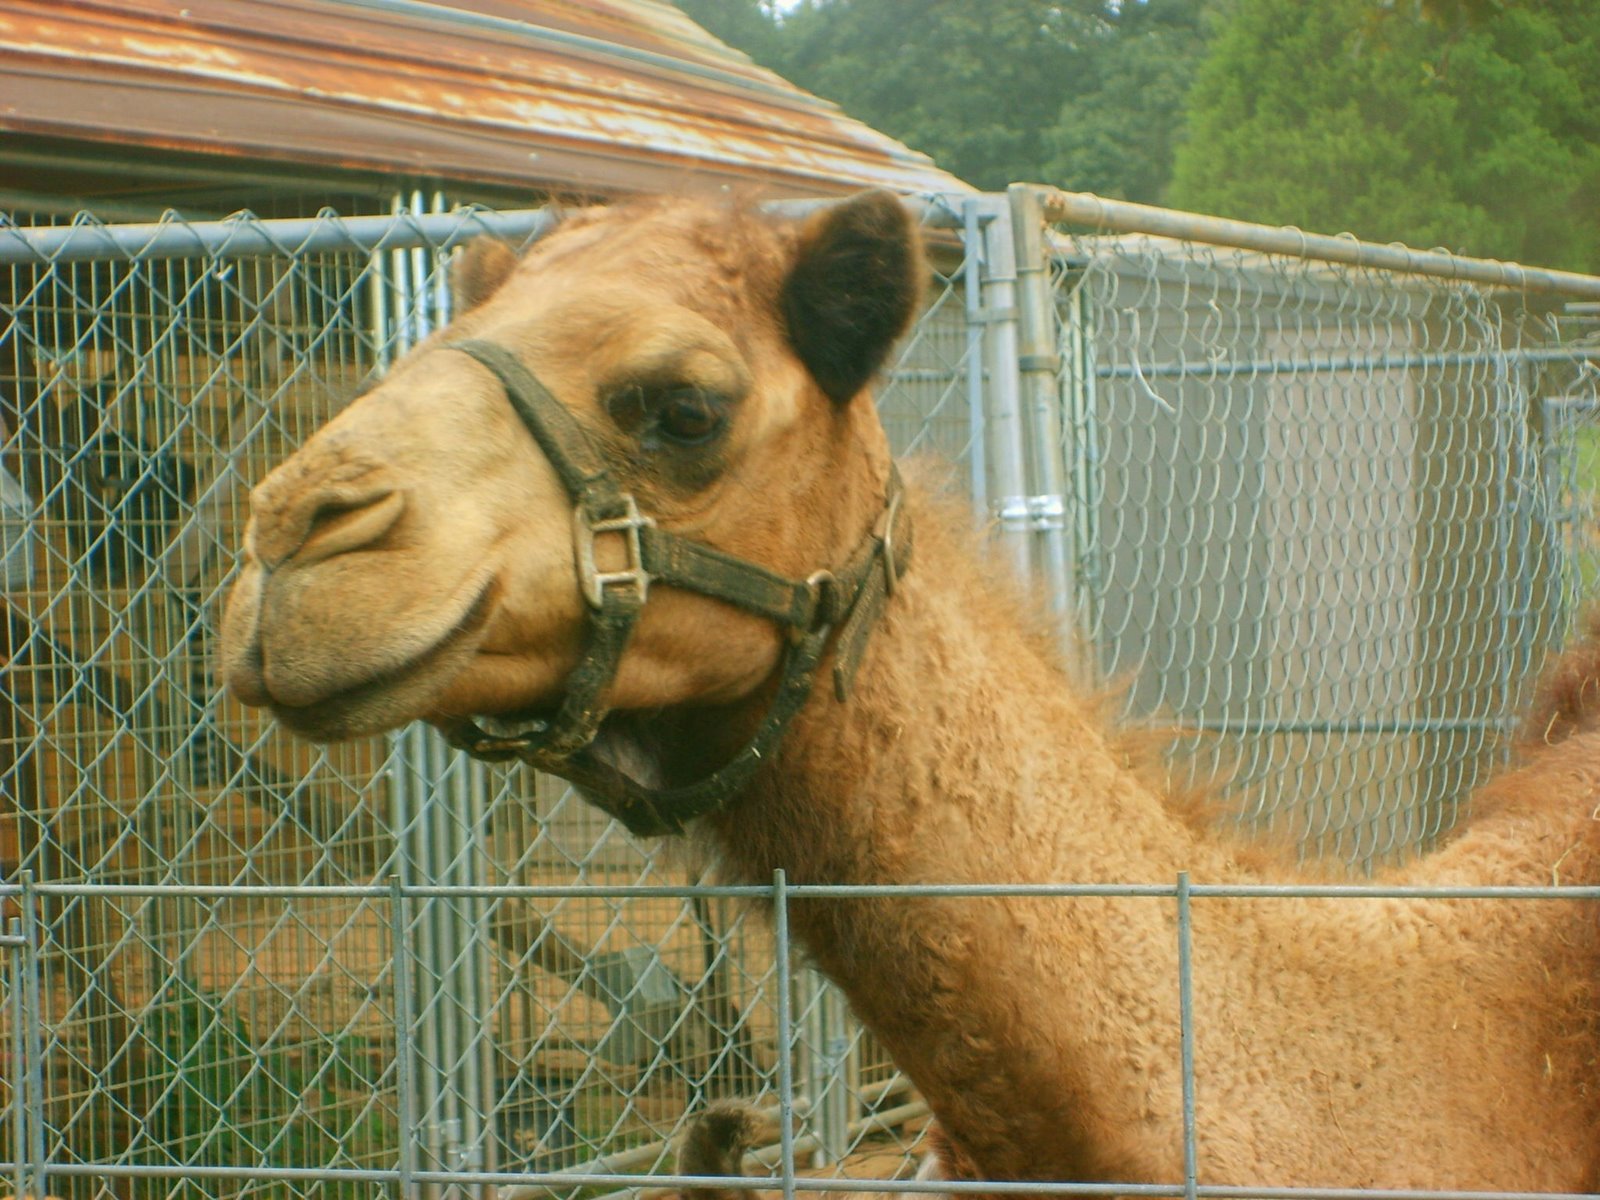 [Camel.jpg]